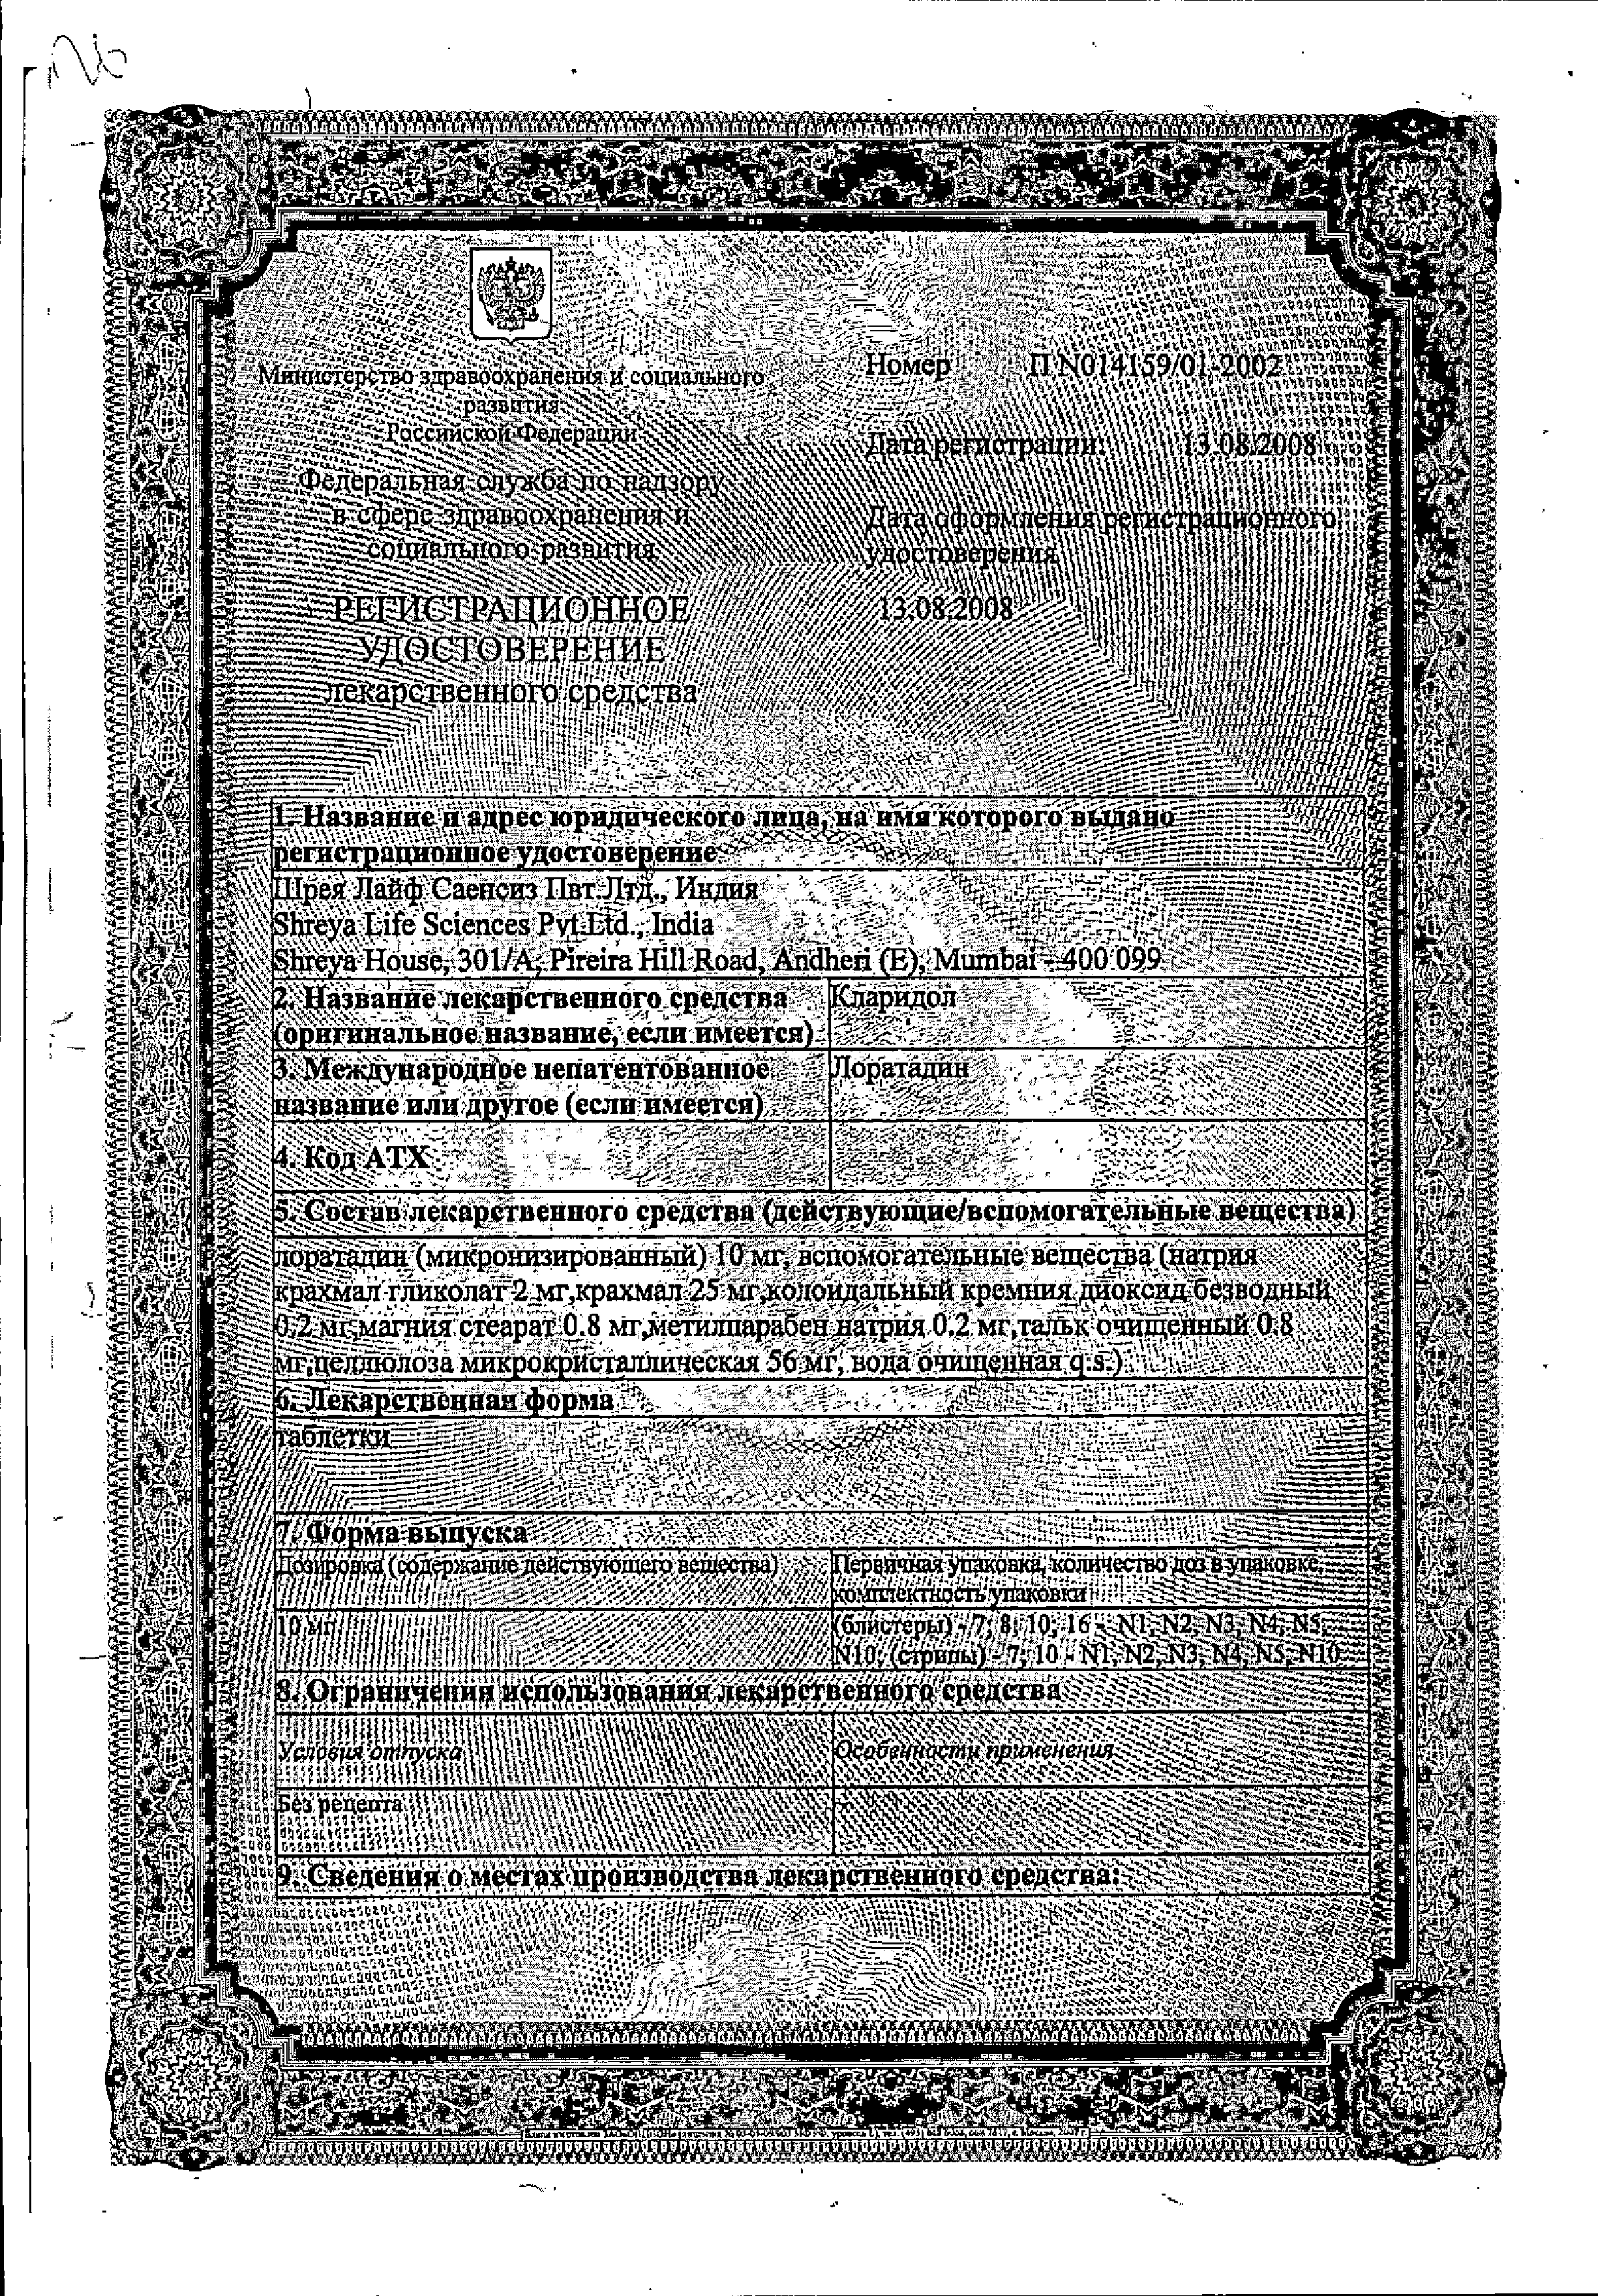 Кларидол сертификат